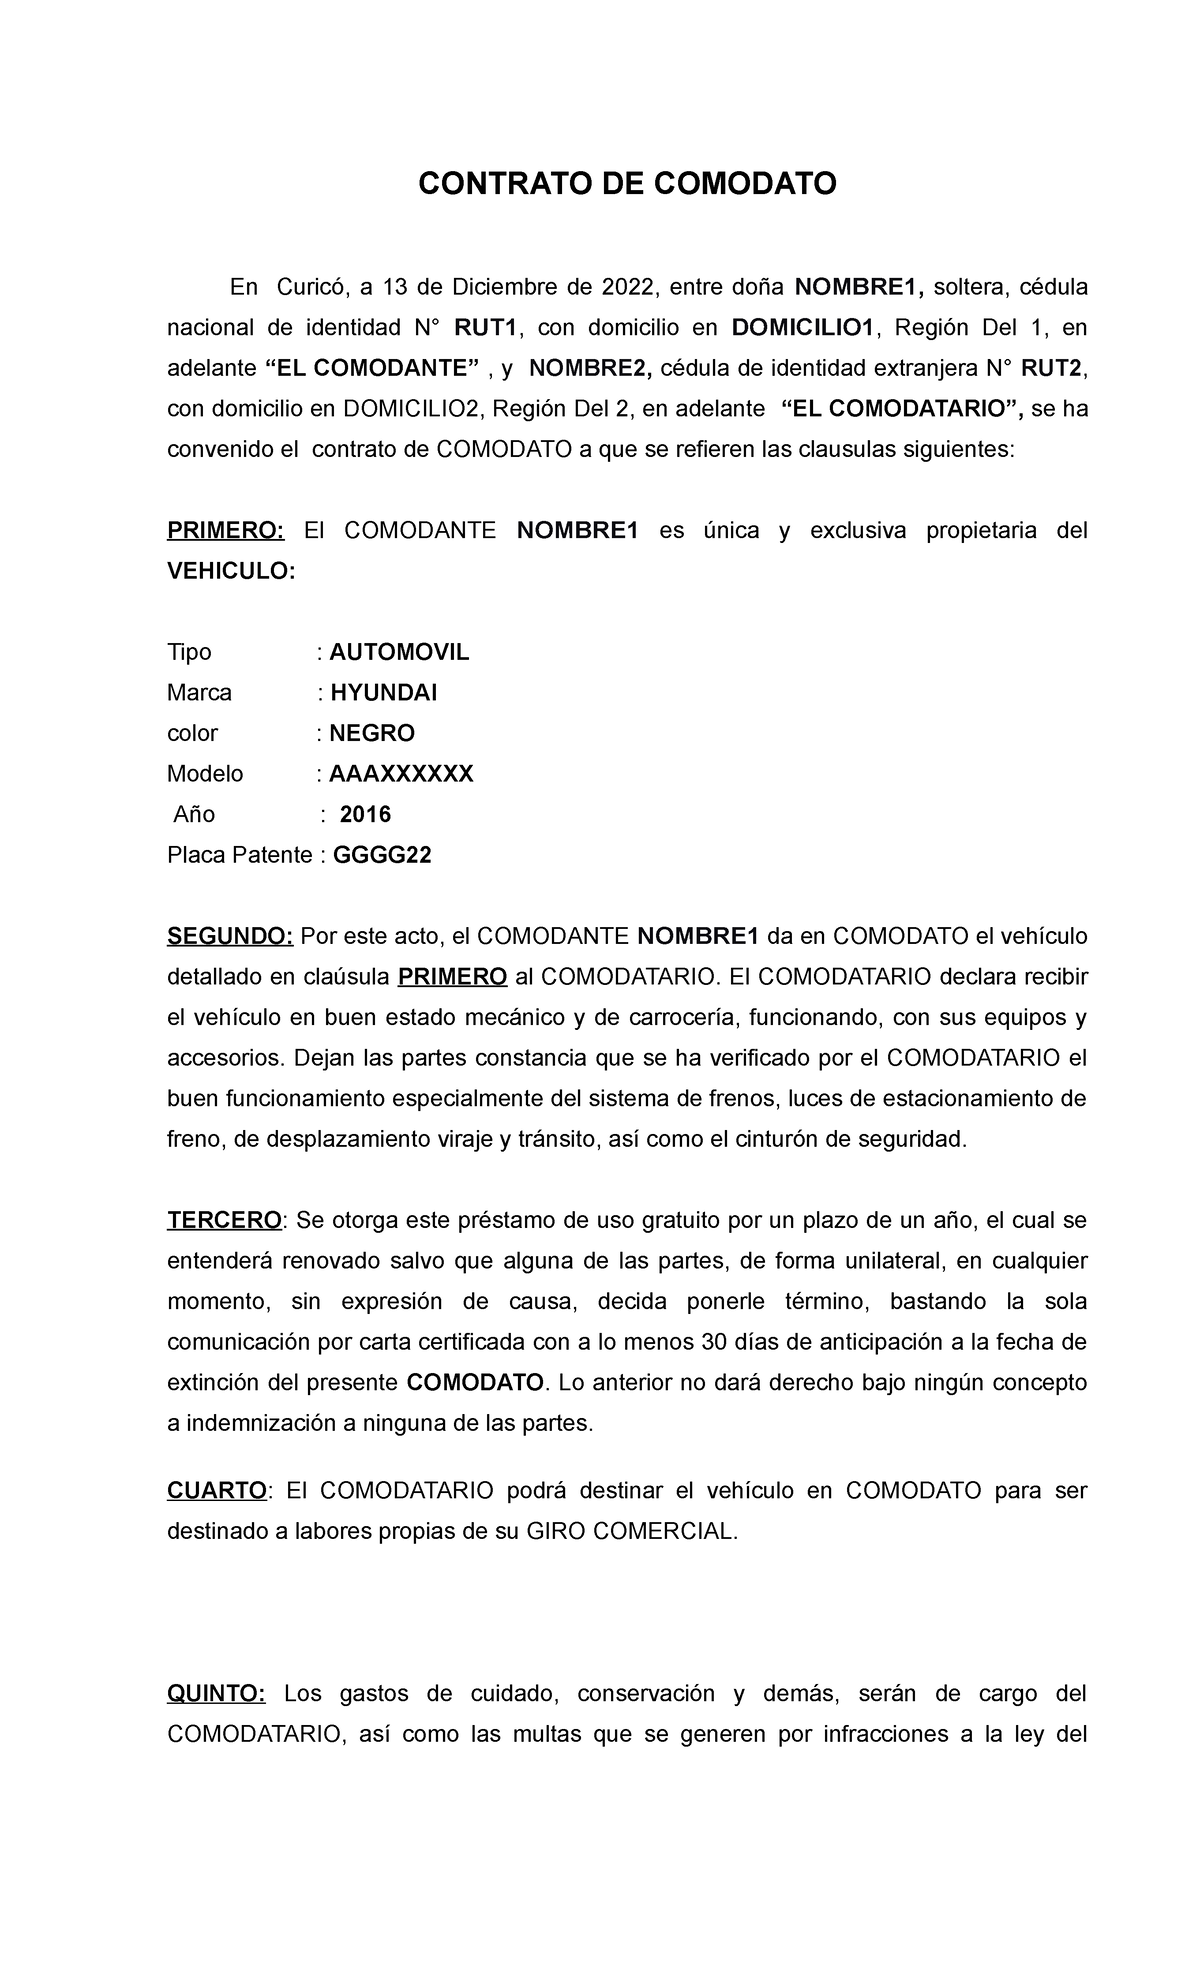 Contrato Comodato Vehiculo Contrato De Comodato En Curicó A 13 De Diciembre De 2022 Entre 9410